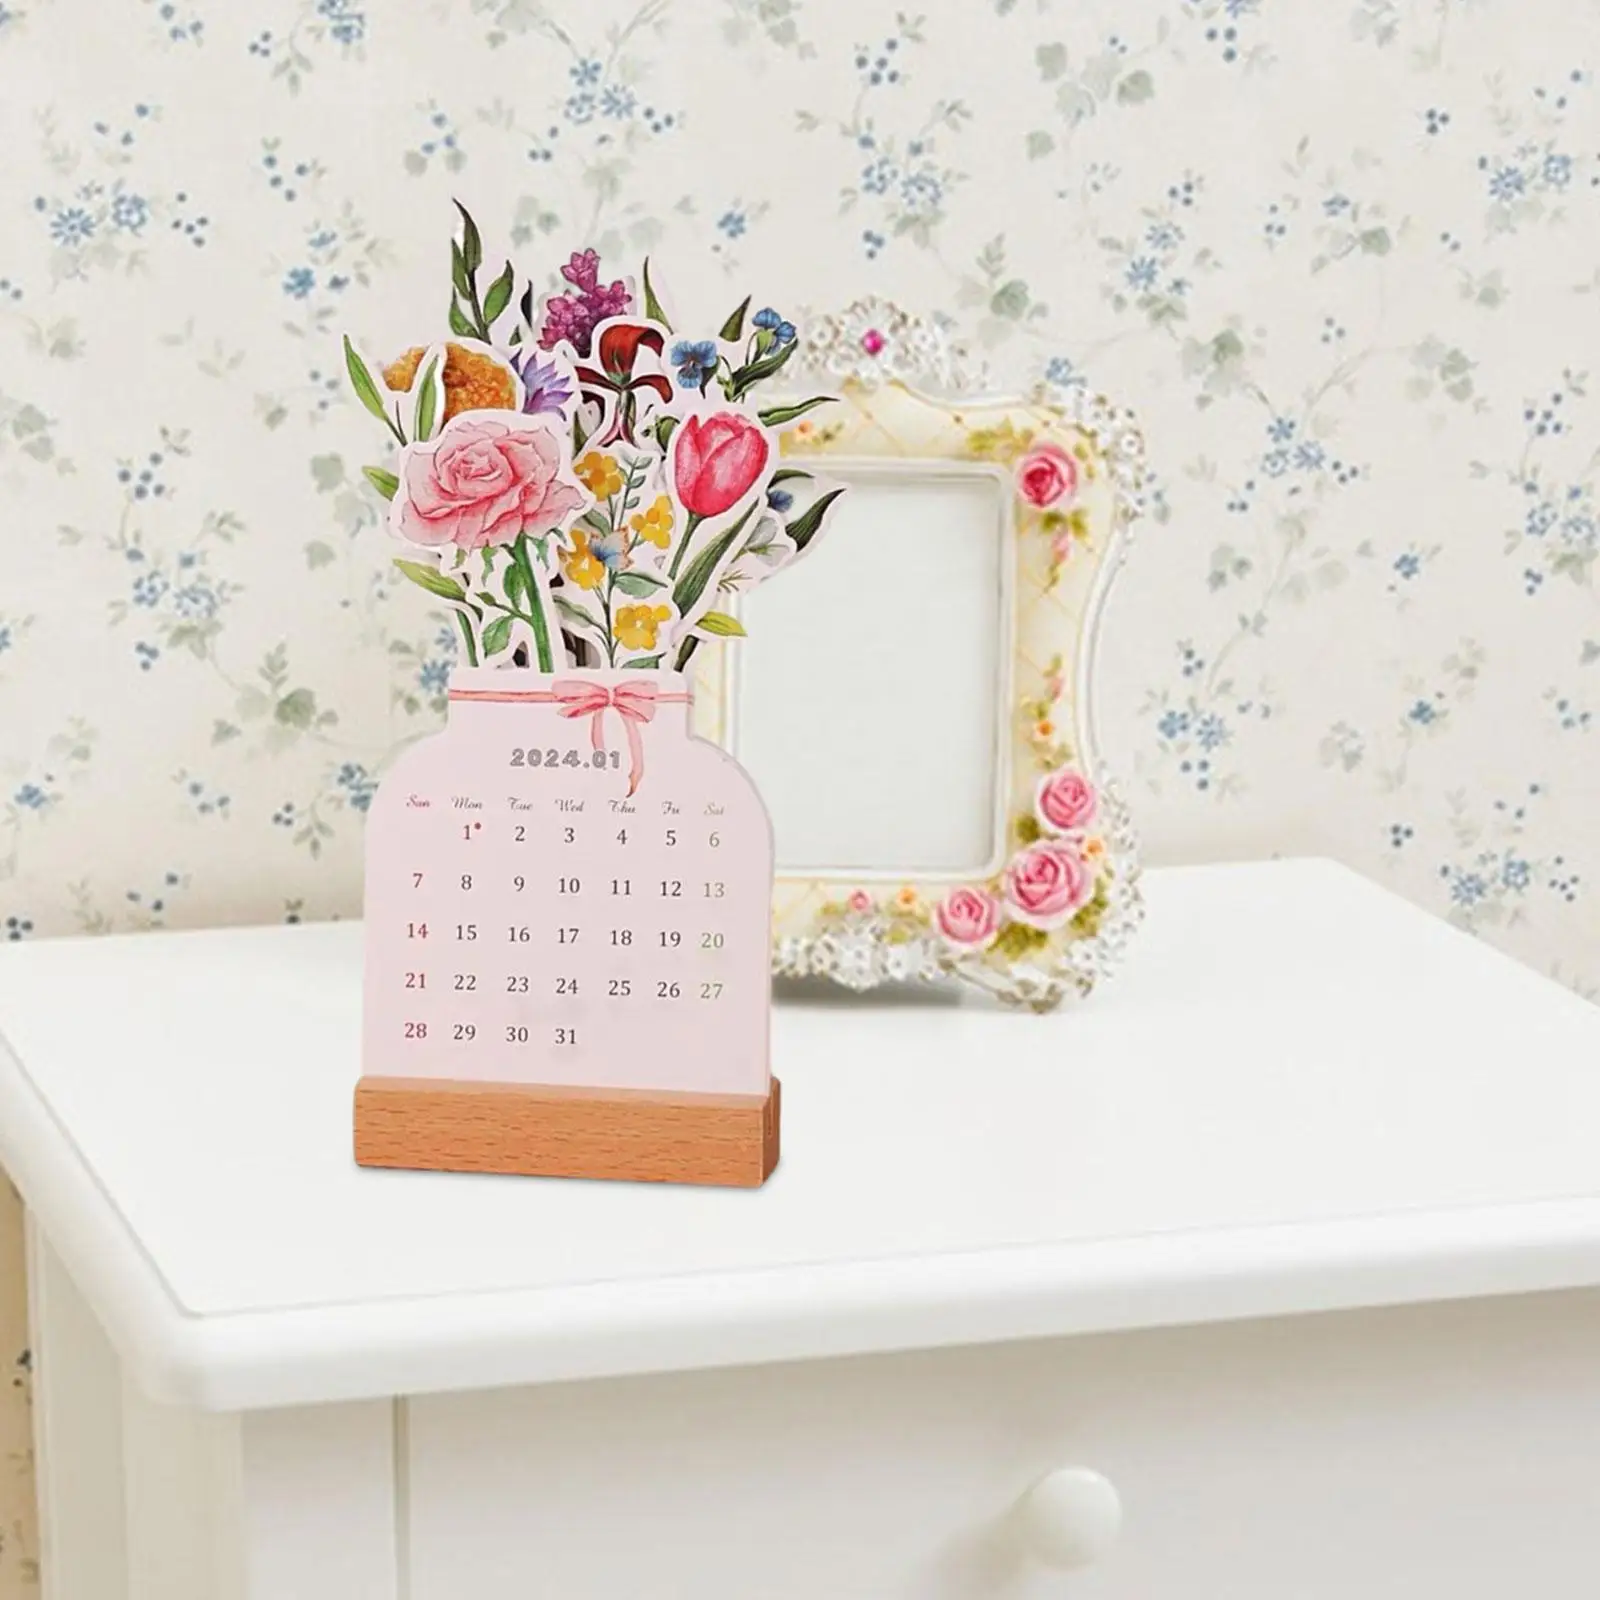 2024 Desk Calendar Vase Shaped Wooden Base Decor Small Monthly Calendar Planner Flower Desktop Calendar for New Year Office